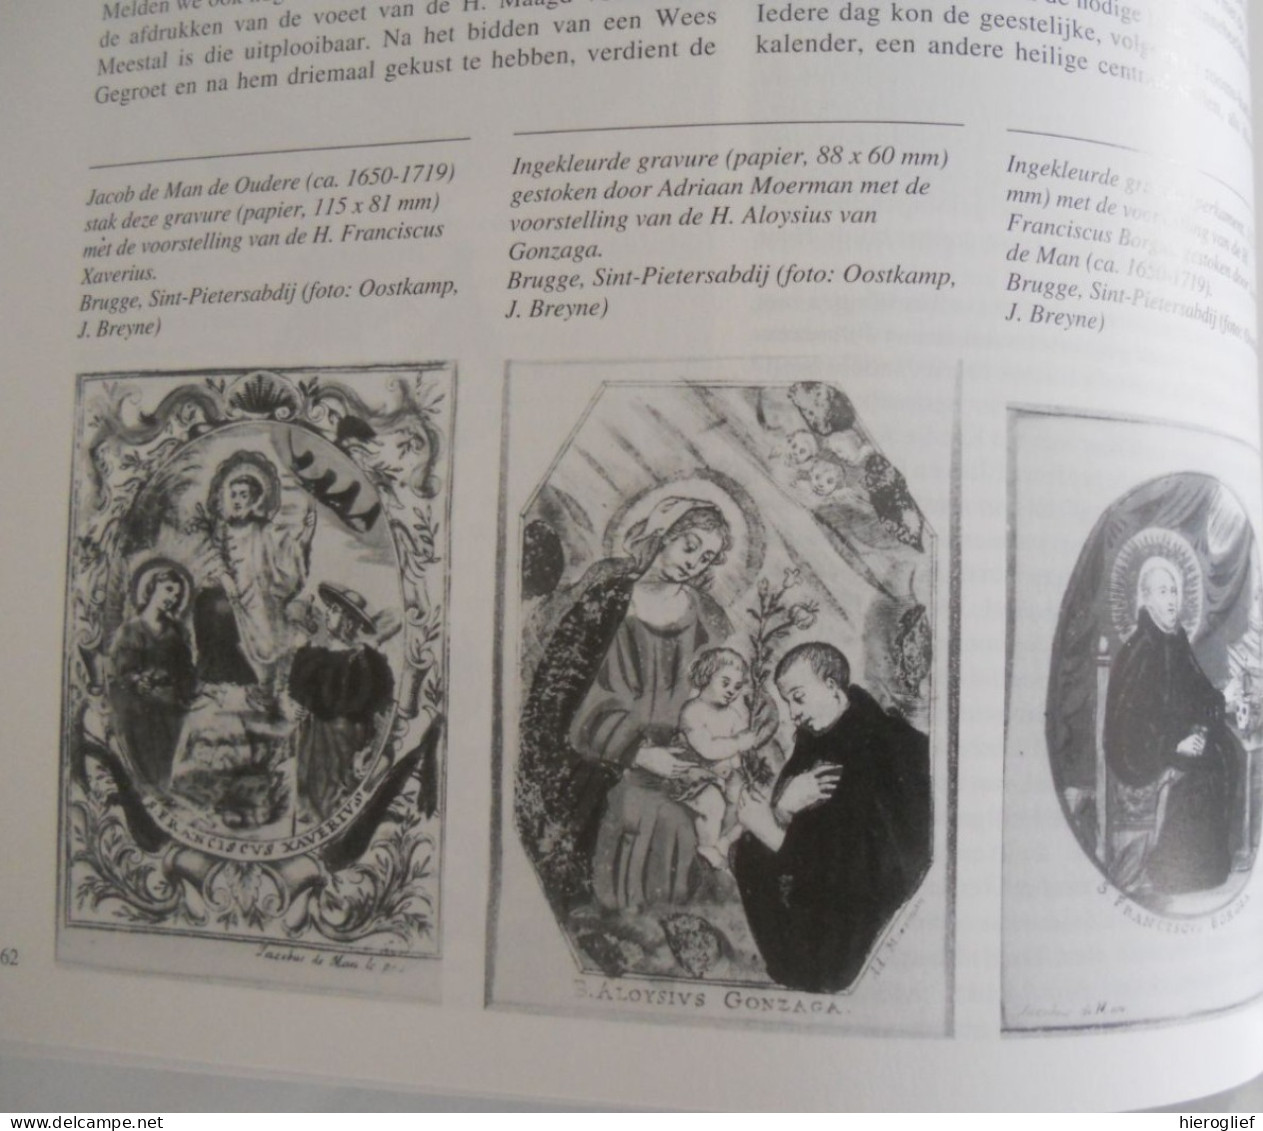 DE HEMEL OP AARDE themanr 241 tijdschrft Vlaanderen 1992 devotie prenten iconografie reformatie contrareformatie grafiek